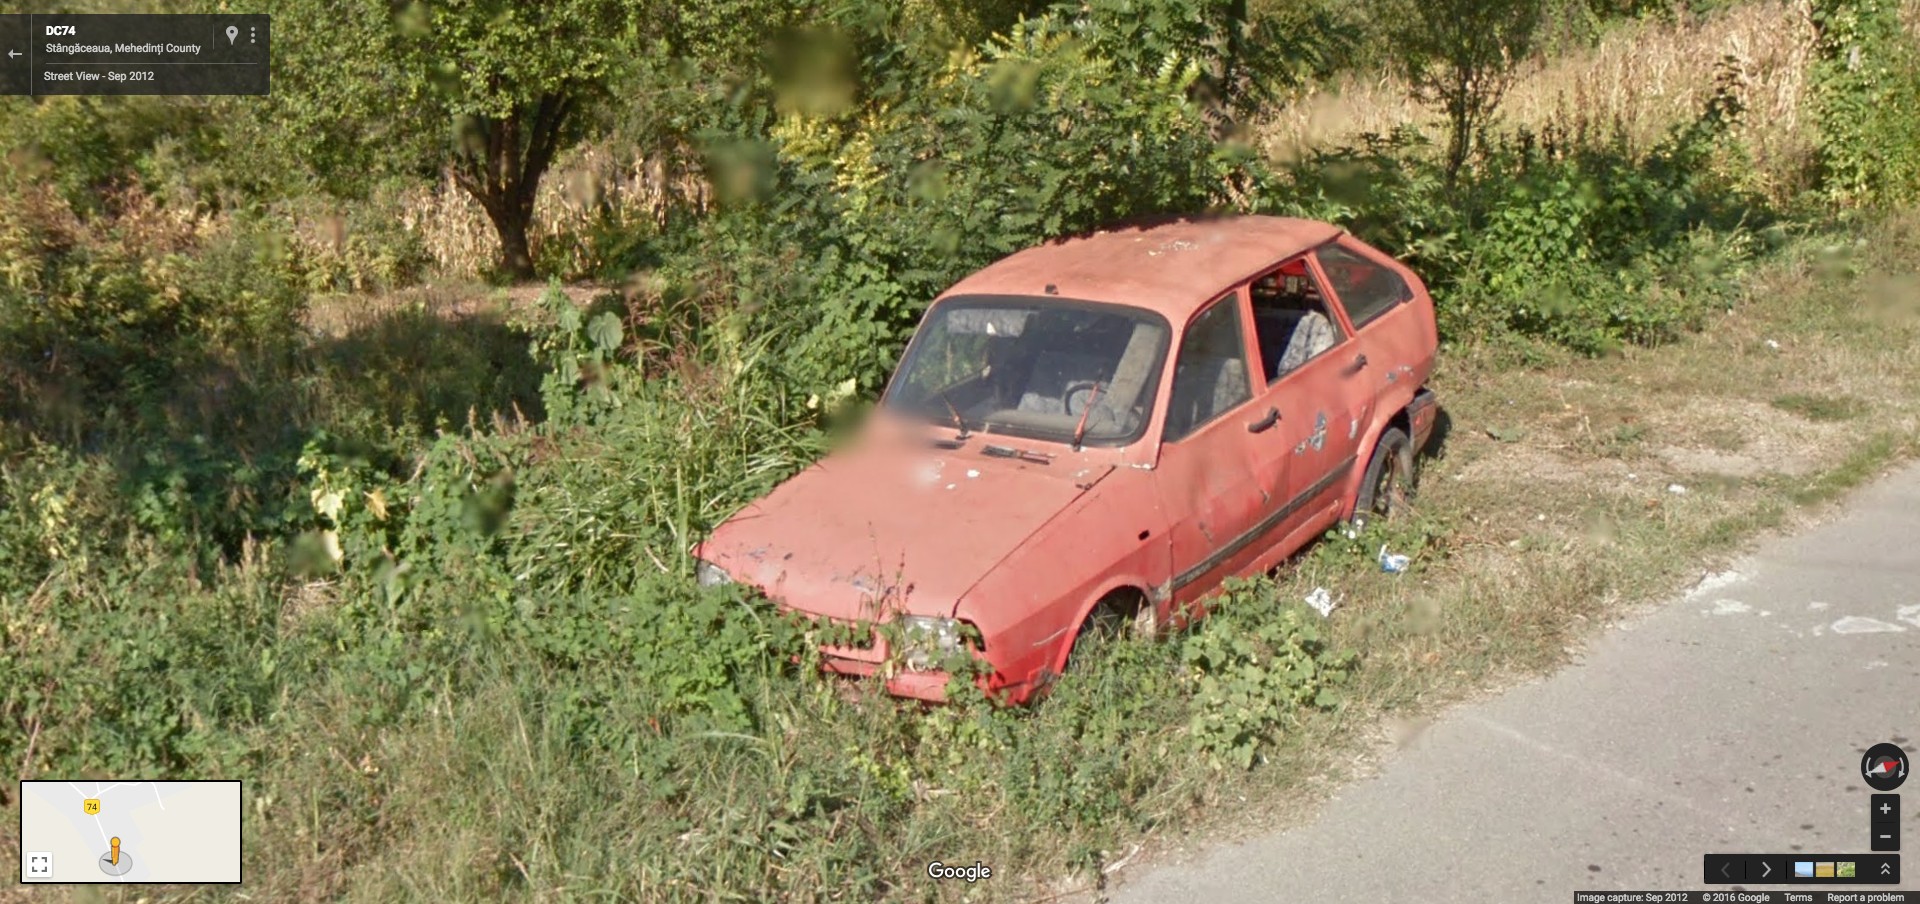 Dacia 1325 - Stangaceaua (Mehedinti)